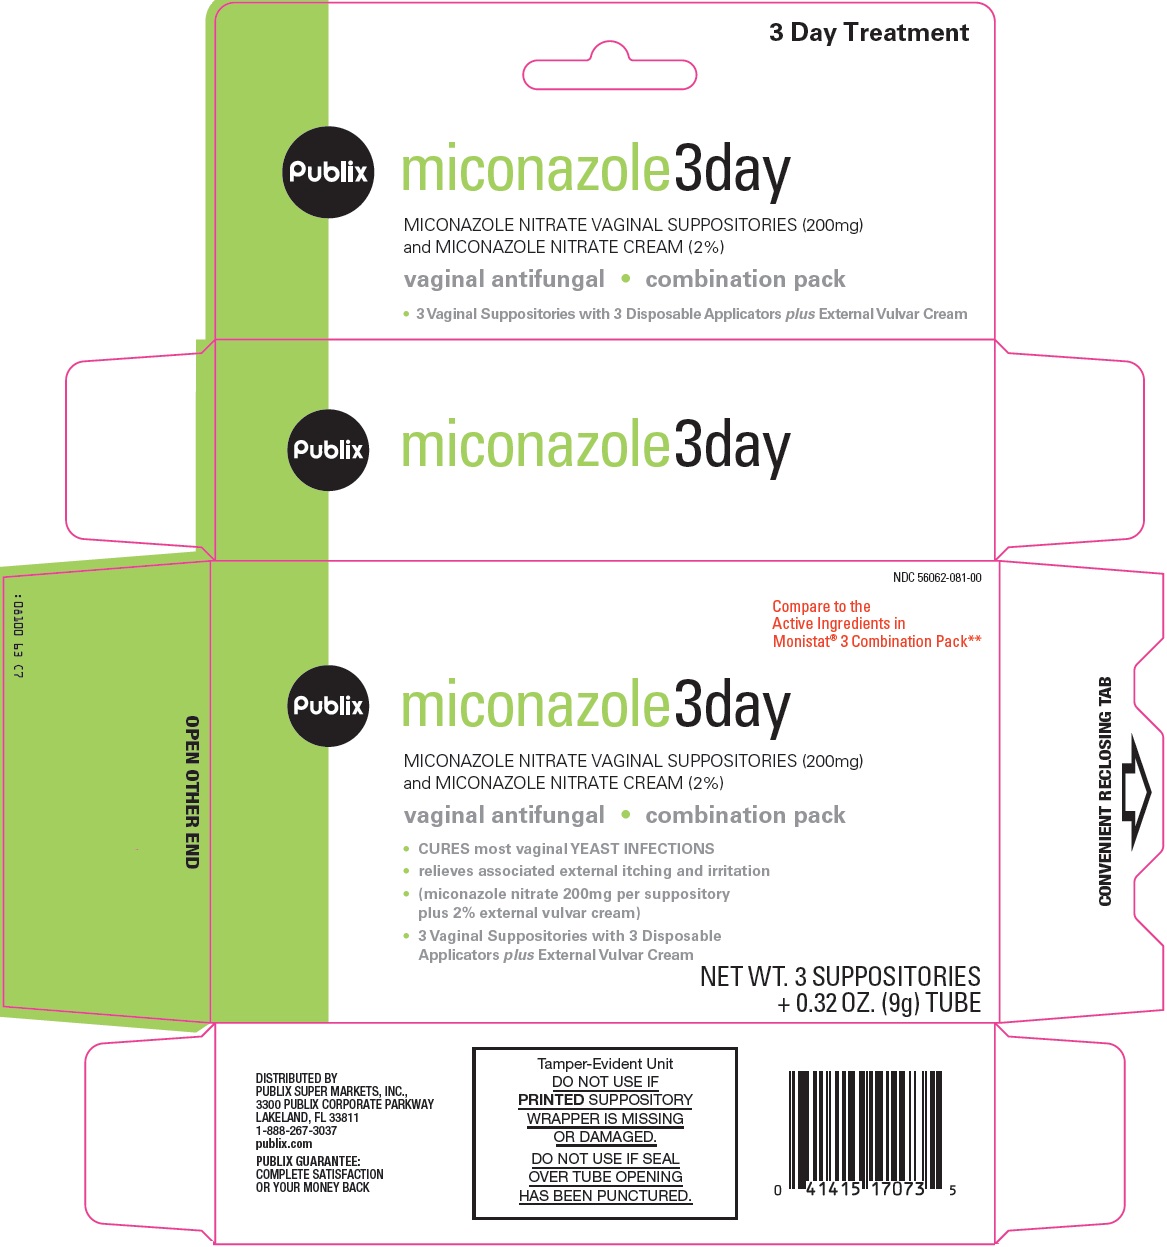 Publix Miconazole 3 day image 1